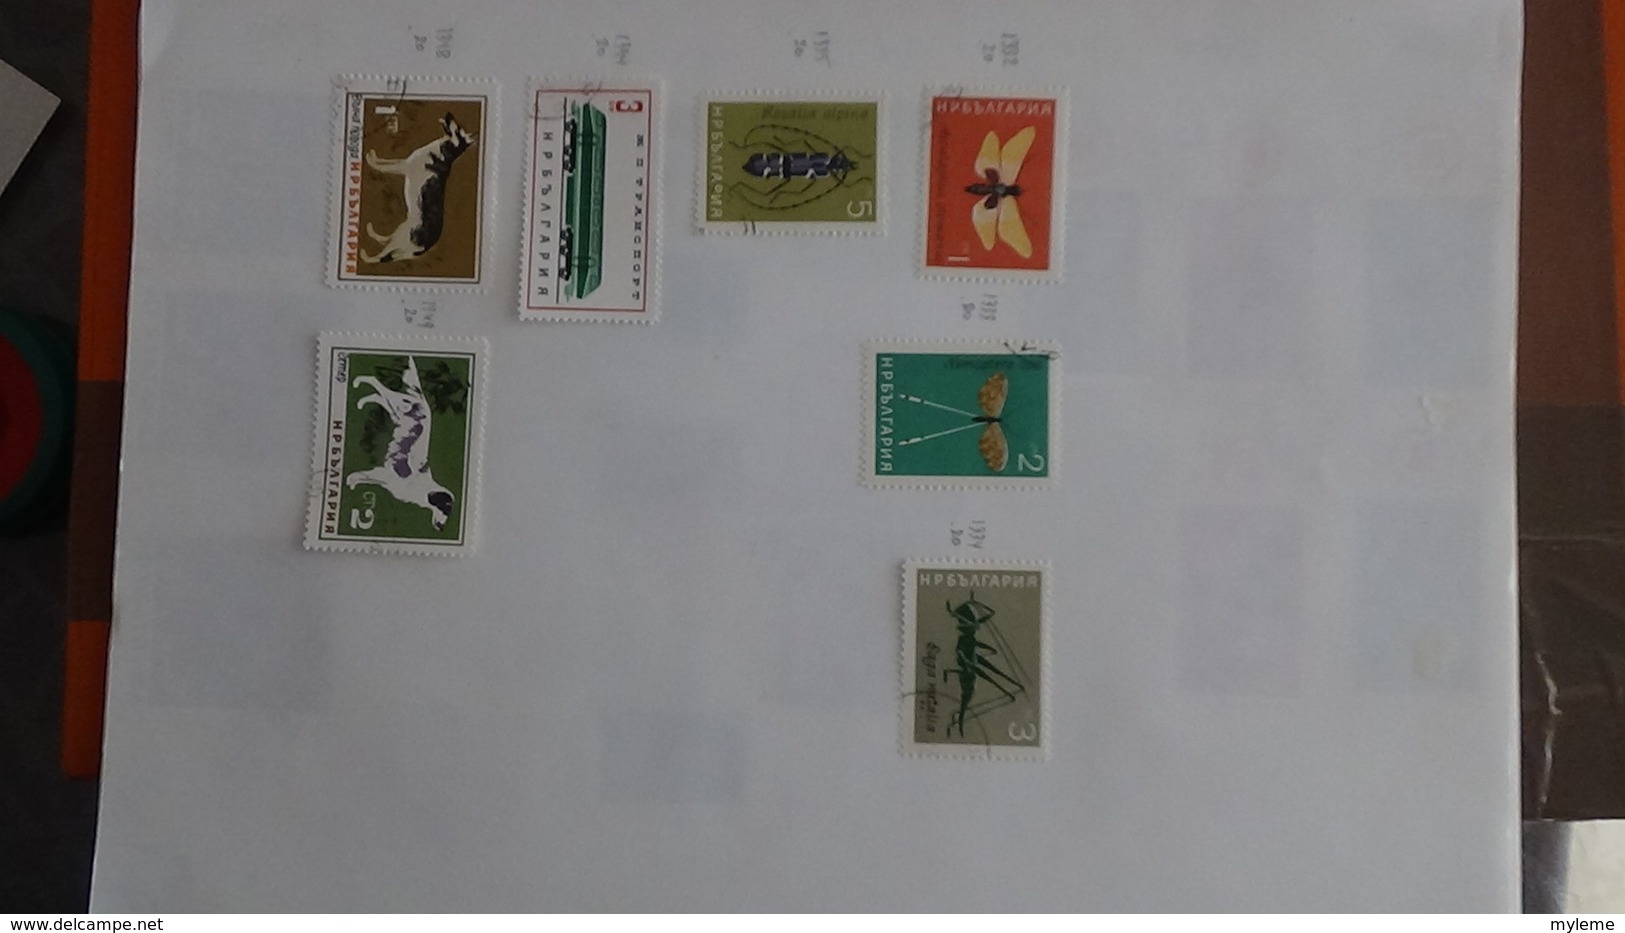 A252 Cahier de timbres de Bulgarie et fins de catalogue  !!! Voir commentaires